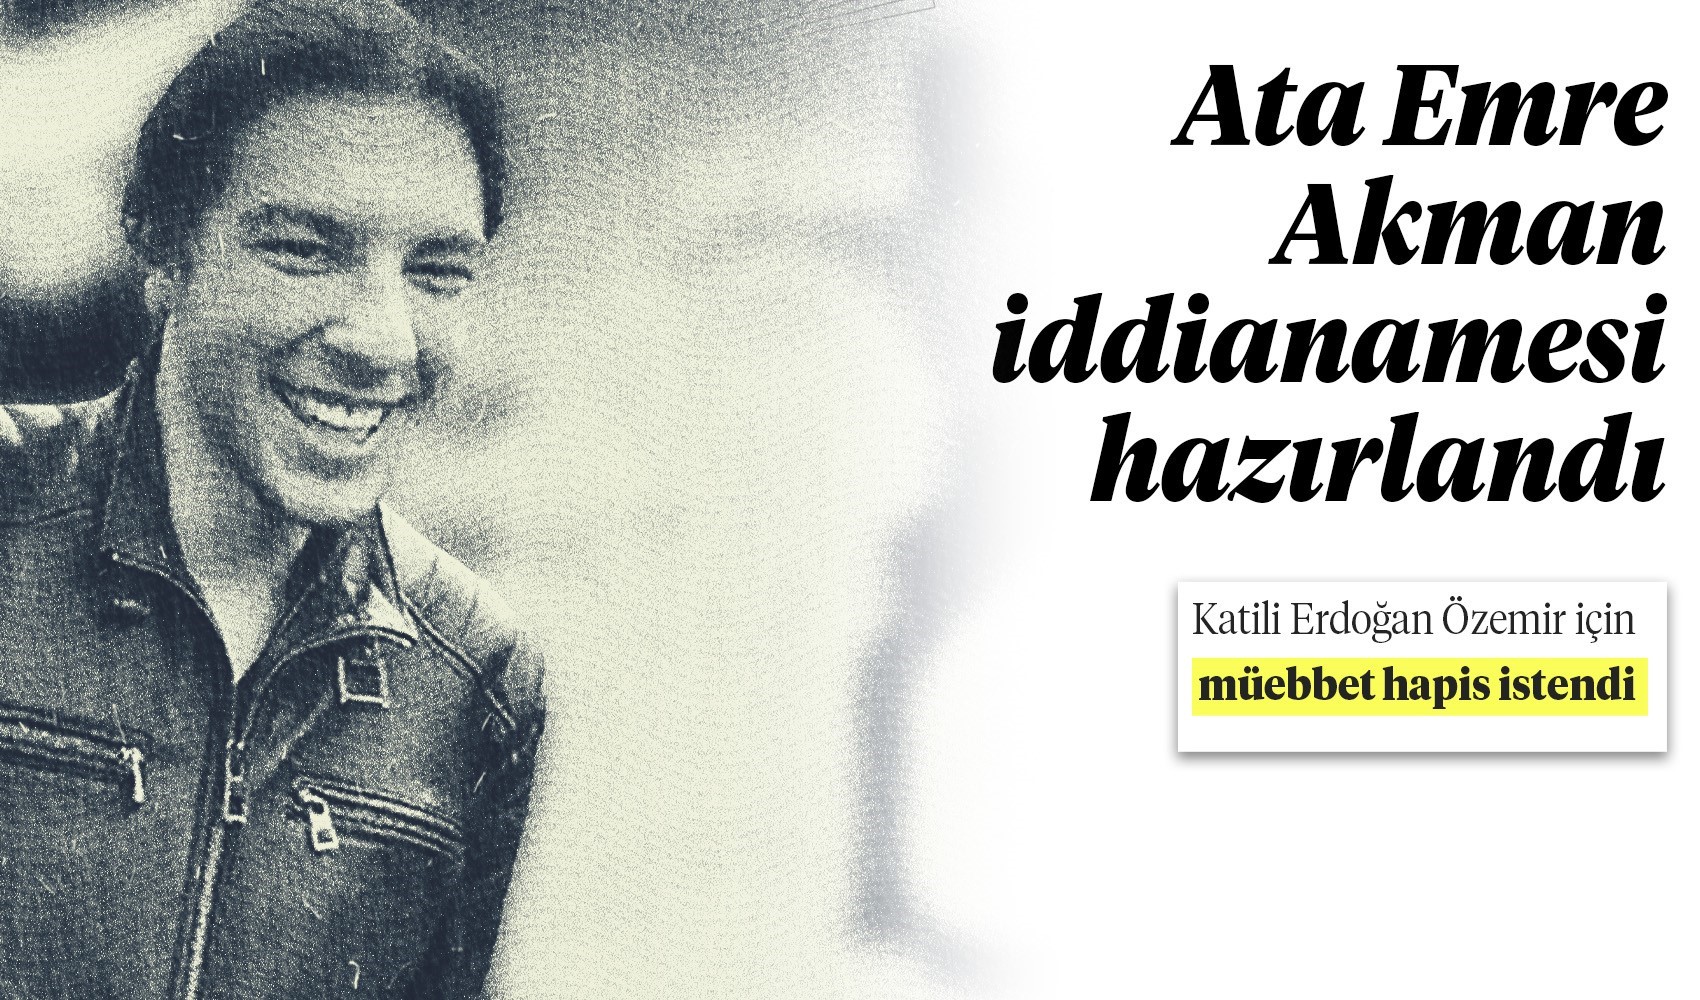 Son Dakika: Ata Emre Akman'ın katili Erdoğan Özdemir için istenen ceza belli oldu! 18 yaşından küçük olduğu için...